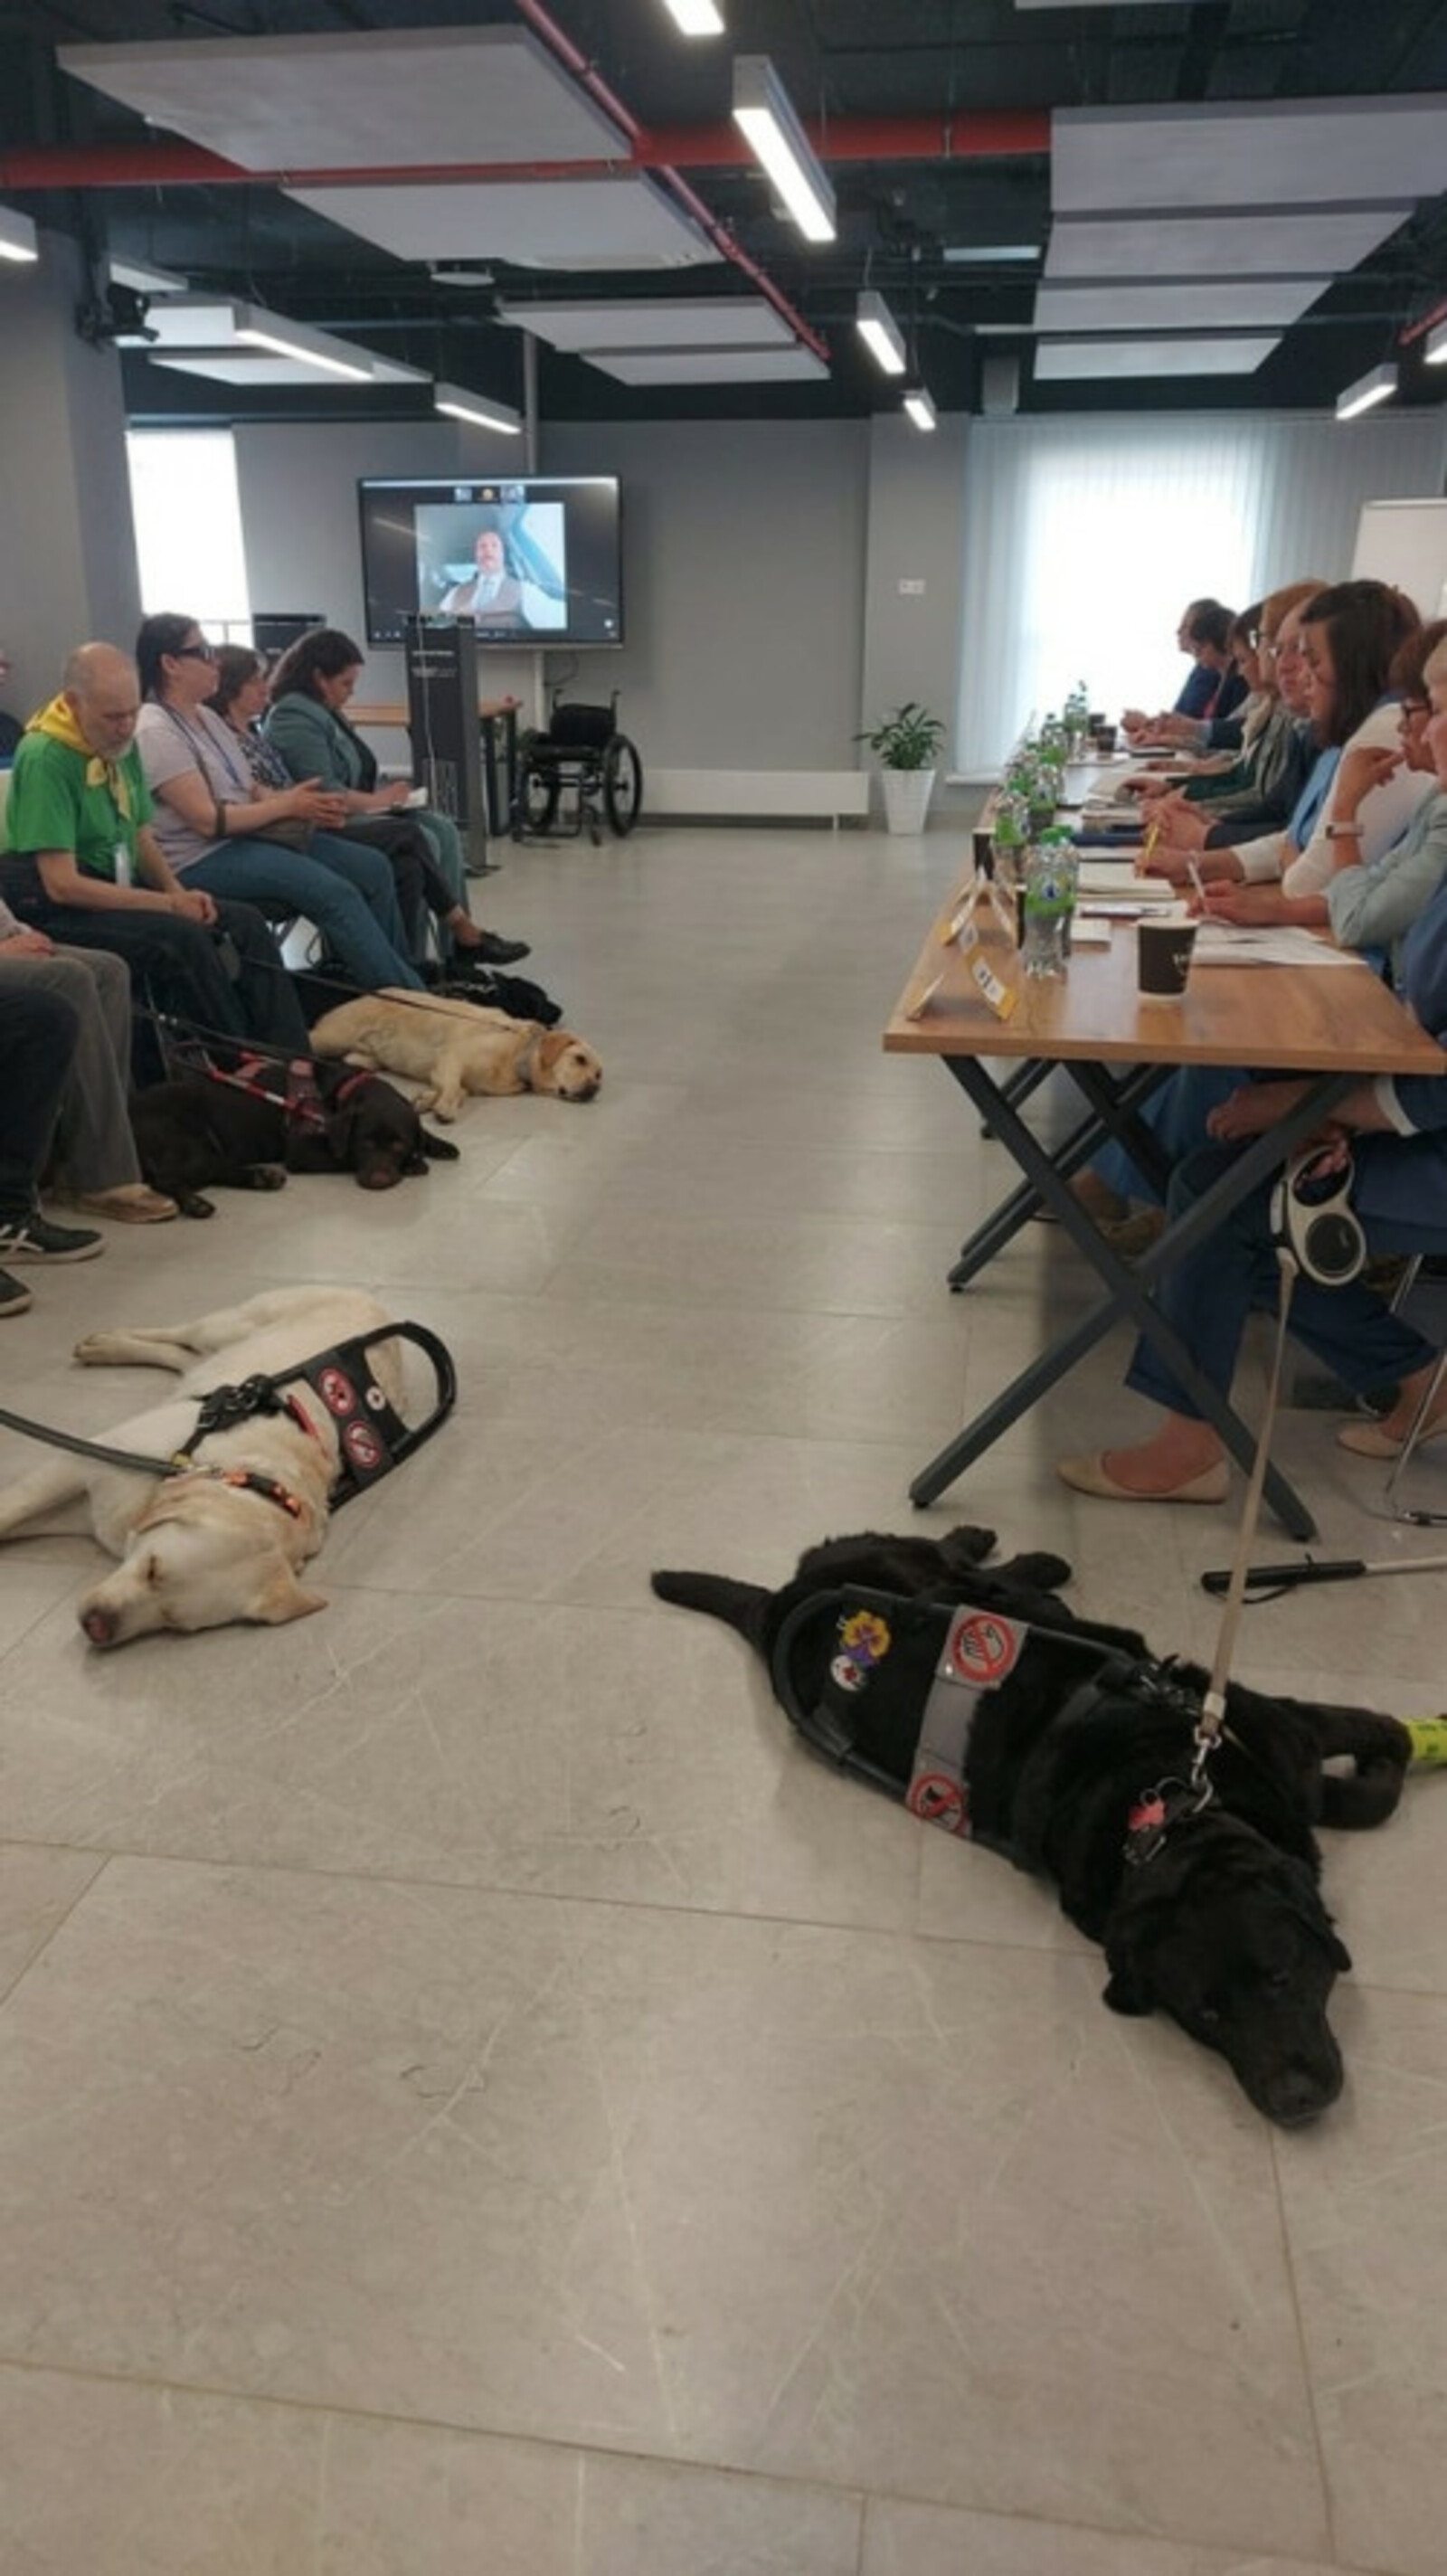 В межвузовском кампусе Башкирии прошла встреча владельцев собак-поводырей